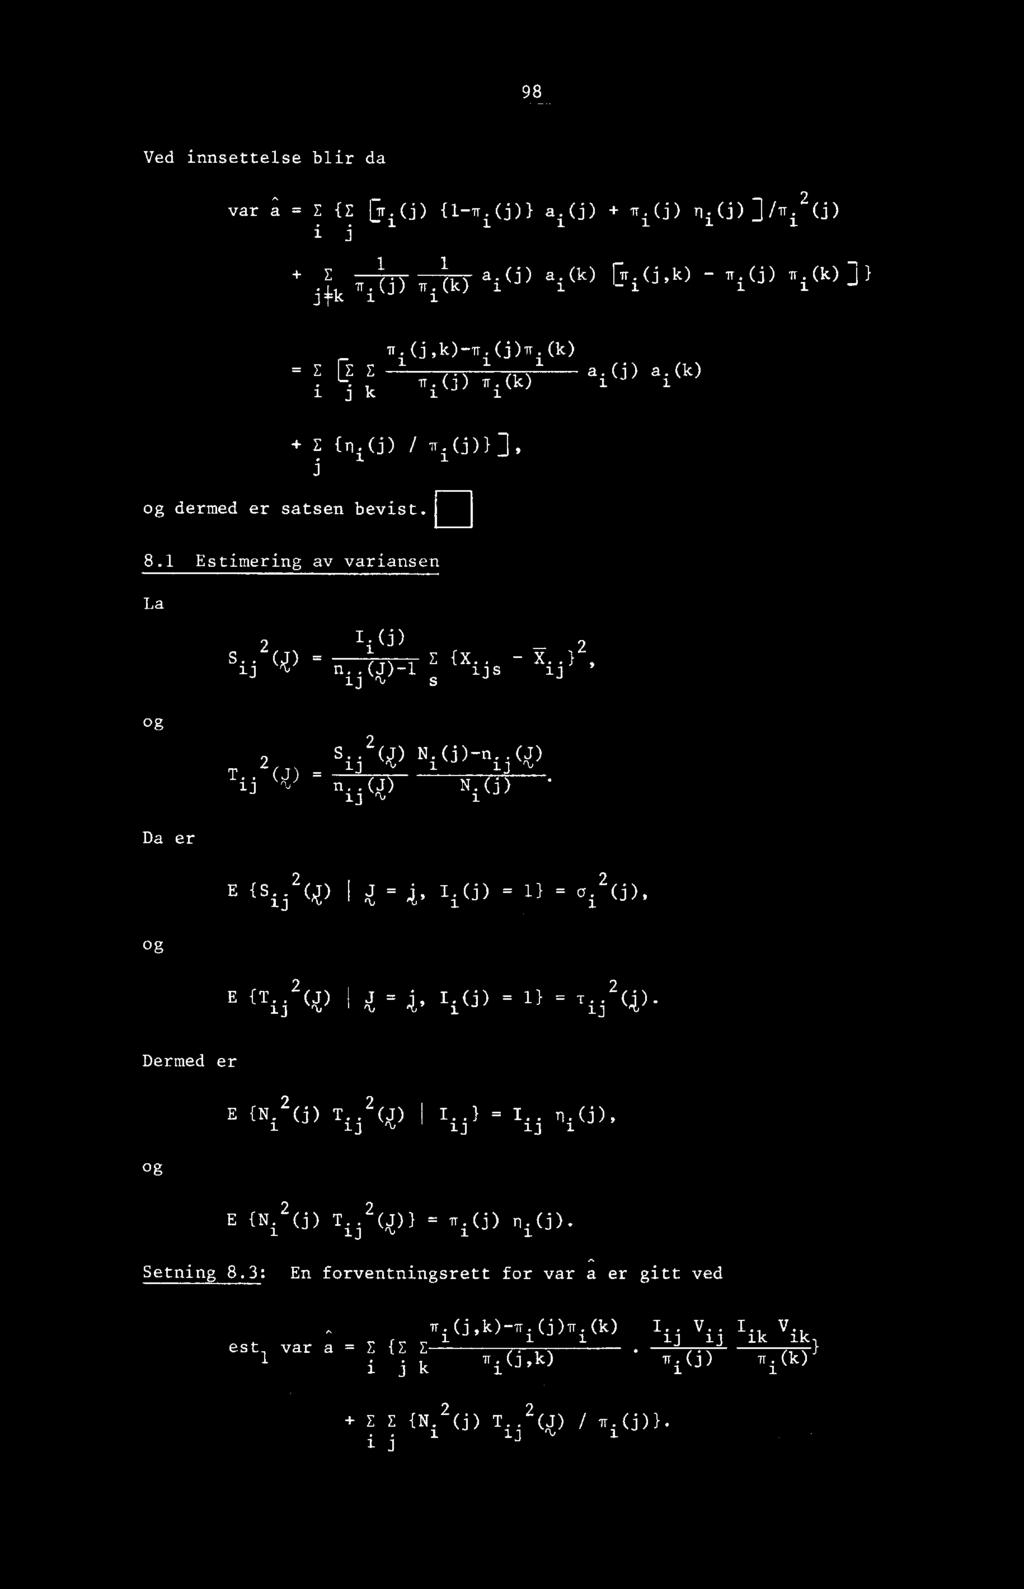 (j)-n. i.0) 1 13 T. 2 (4) - ij n..(j)n.(3) 13 1 2 1.(i) = = 1 1 2. E (T.. 2 (J) i J = Ii(j) = 11 = T.. (4). Dermed er 2 E M 2 (j) T. (J) ij I..1 = 13 I. ij 1.0), og 2 E {N. 2 (j) T. (J)) = 1-.0) n.